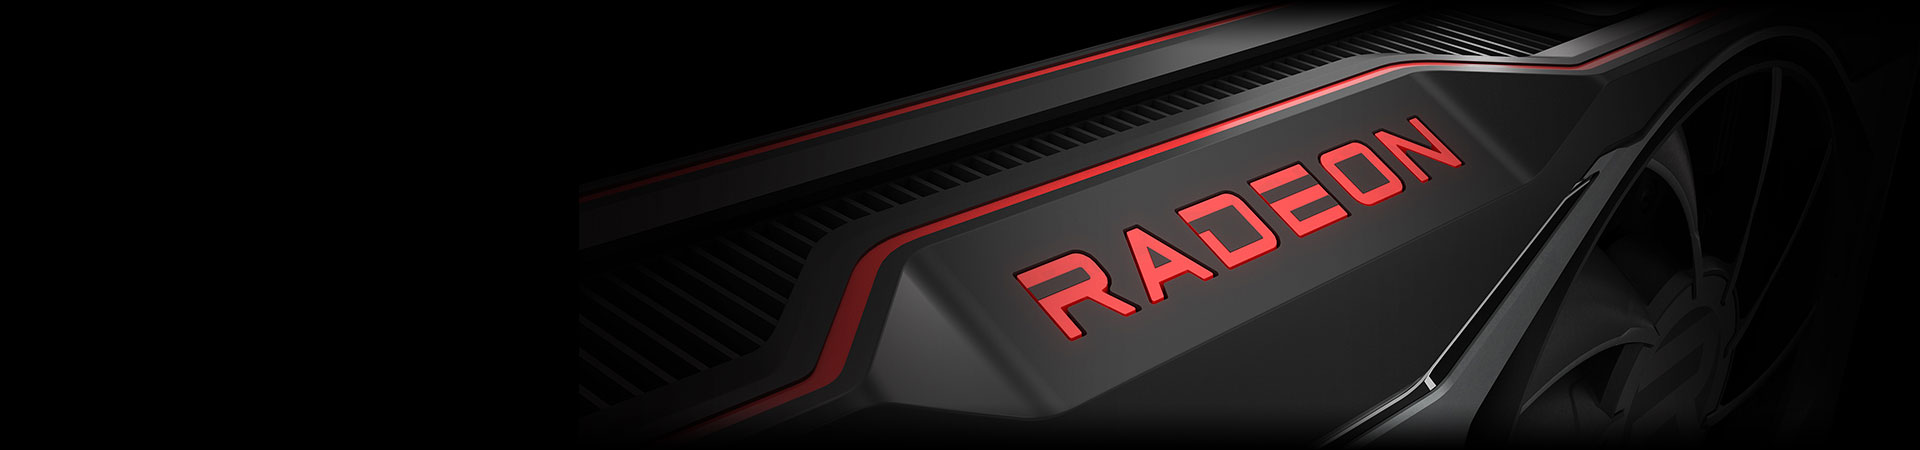 Radeon RX 6700 XT MECH 12G